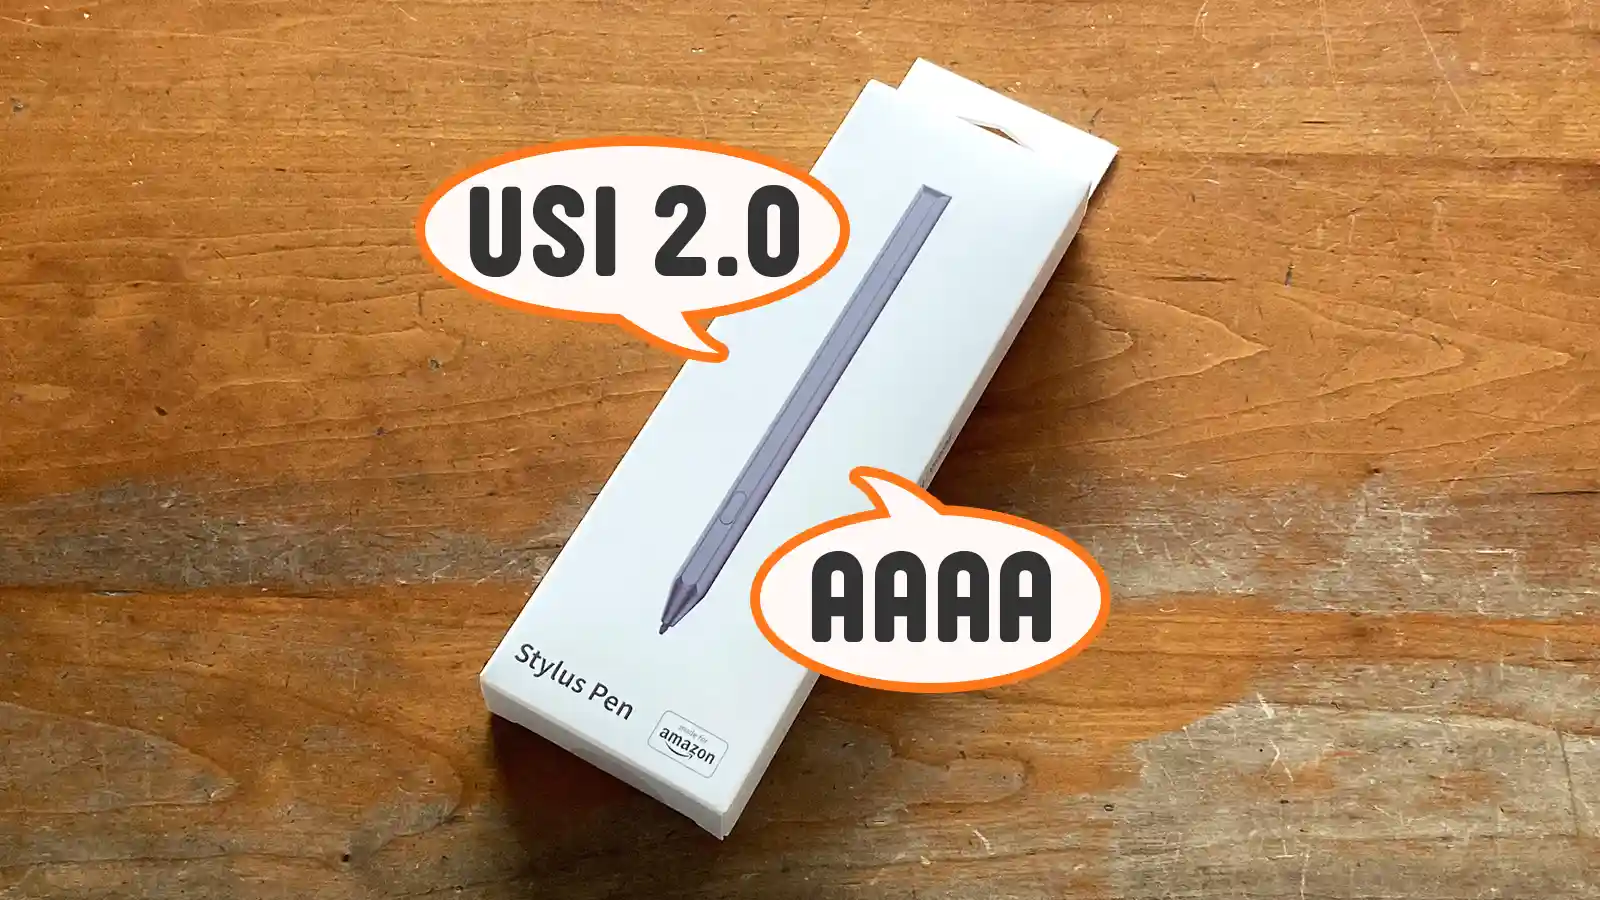 Amazon Fireタブレット スタイラスペン USI2.0 Made for Amazon